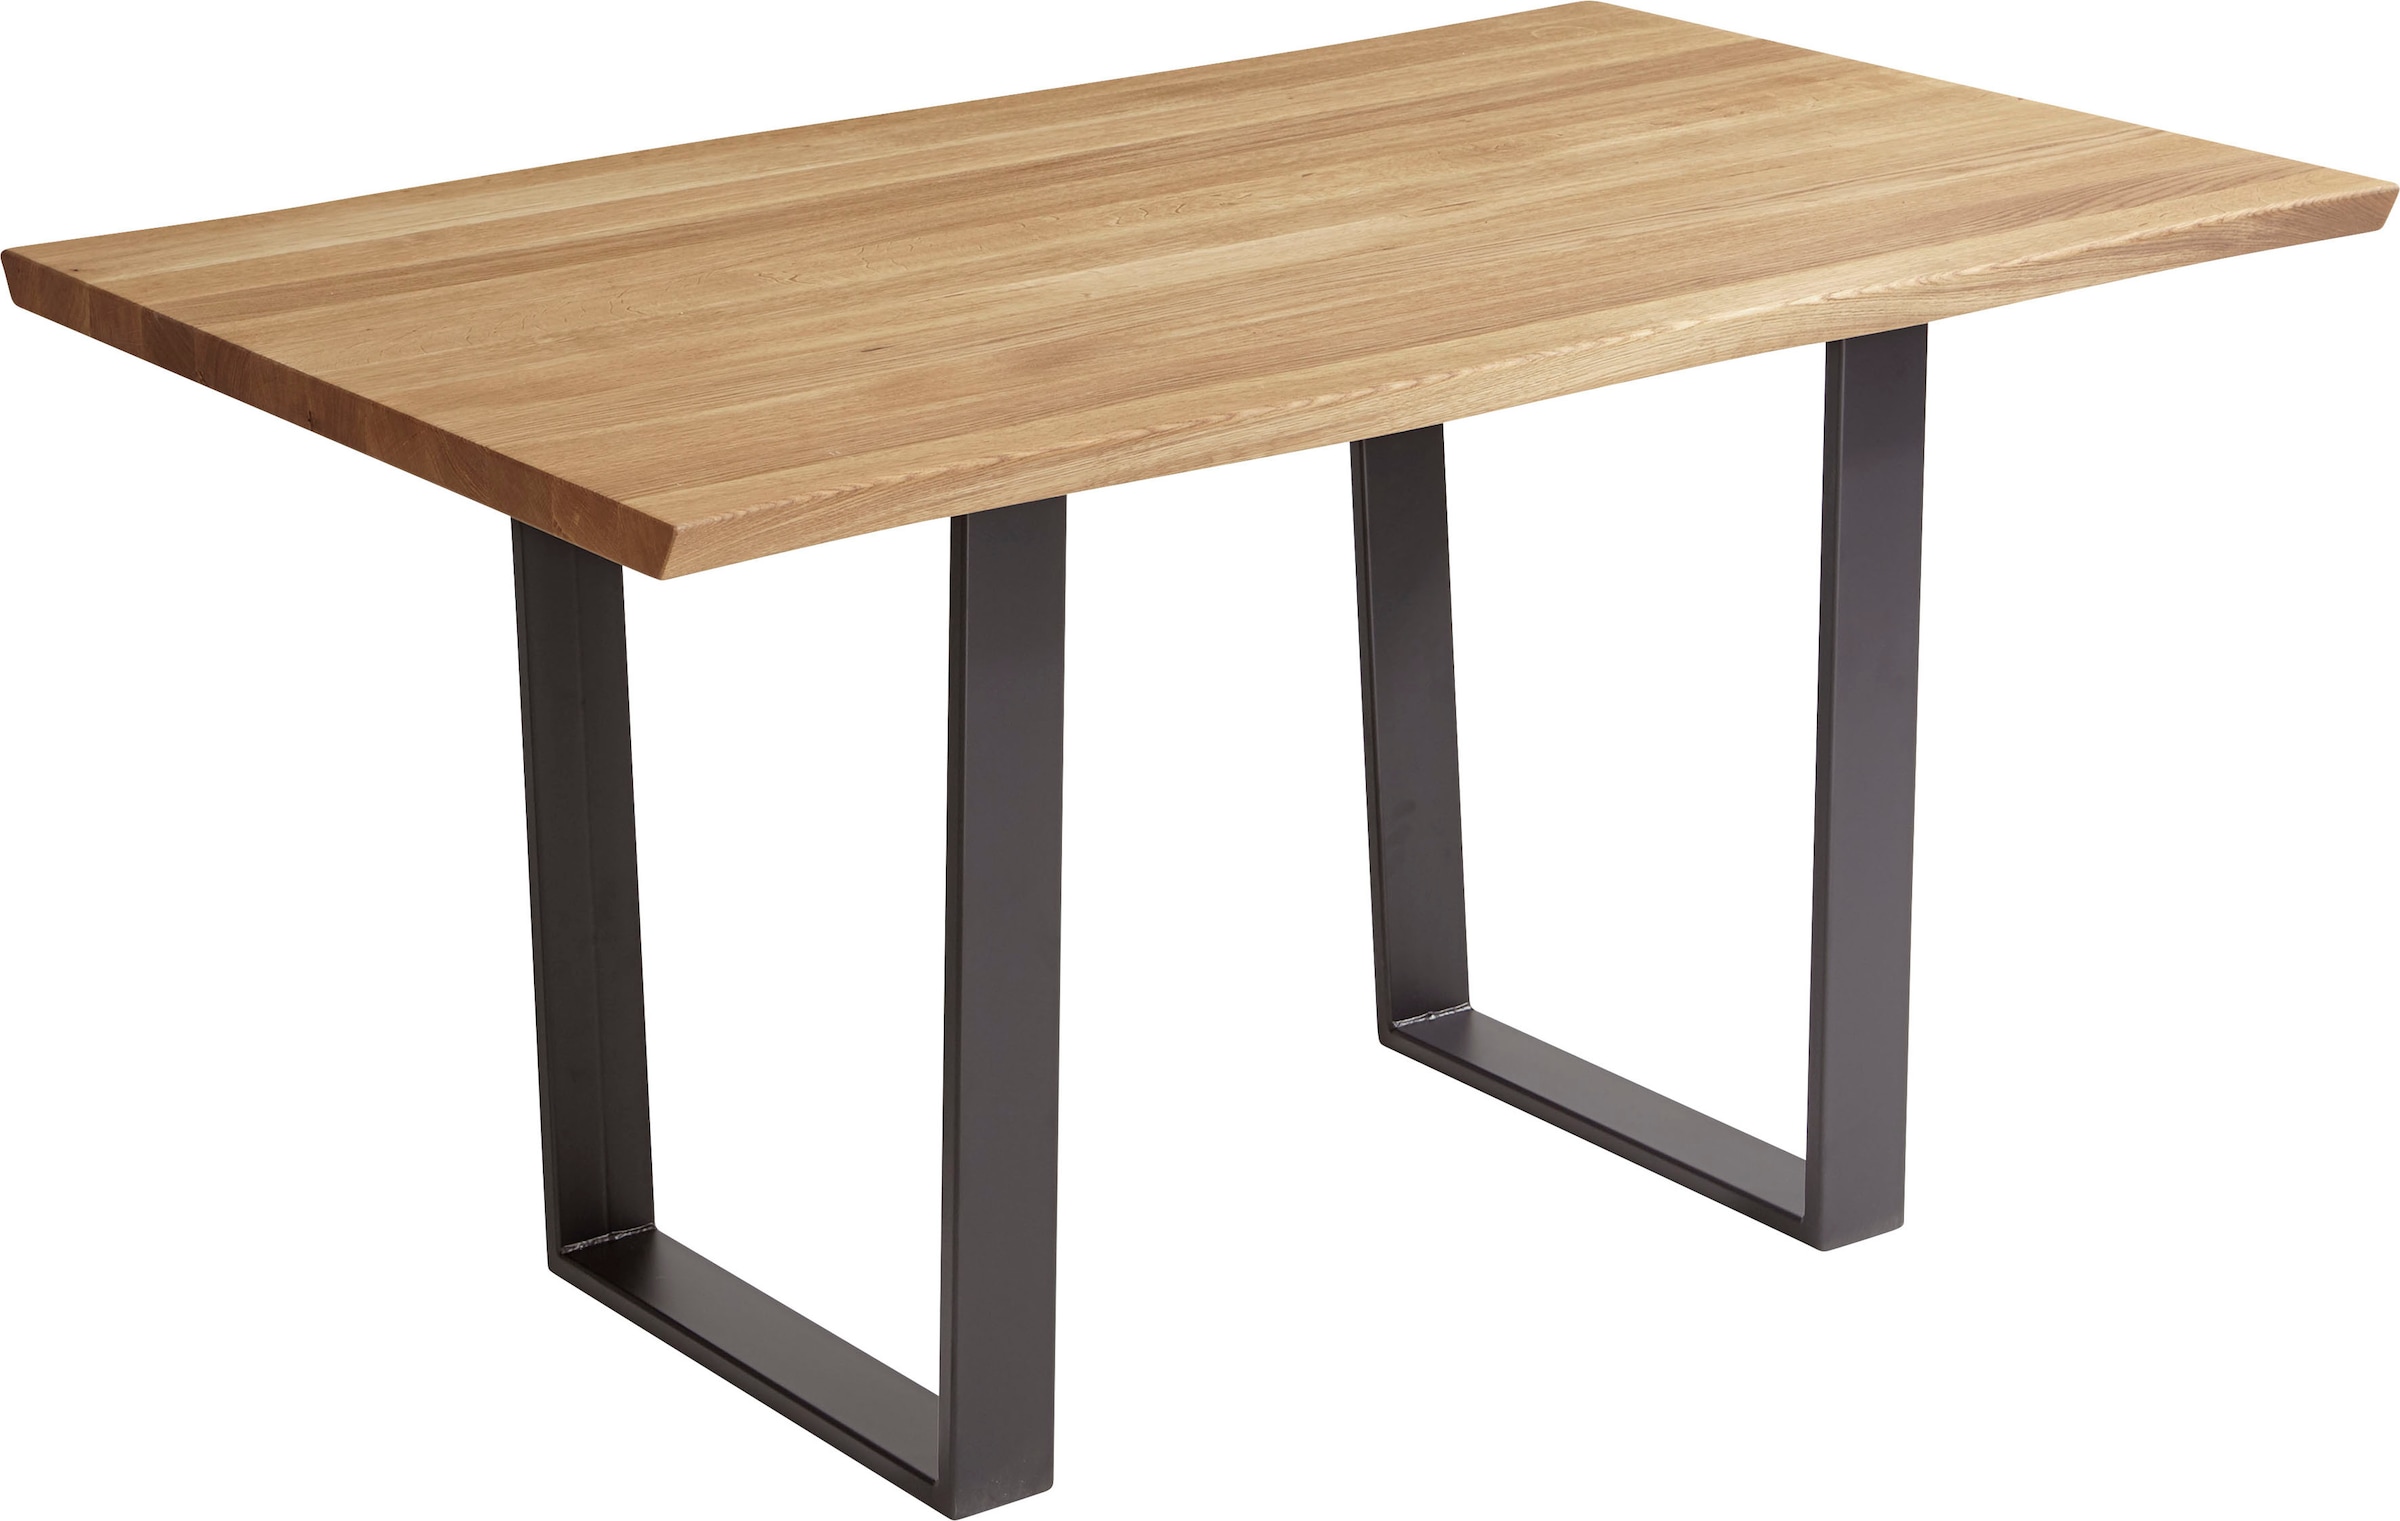 SCHÖSSWENDER Baumkantentisch "Oviedo 4", FSC-zertifiziertes Massivholztischplatte mit Baumkante